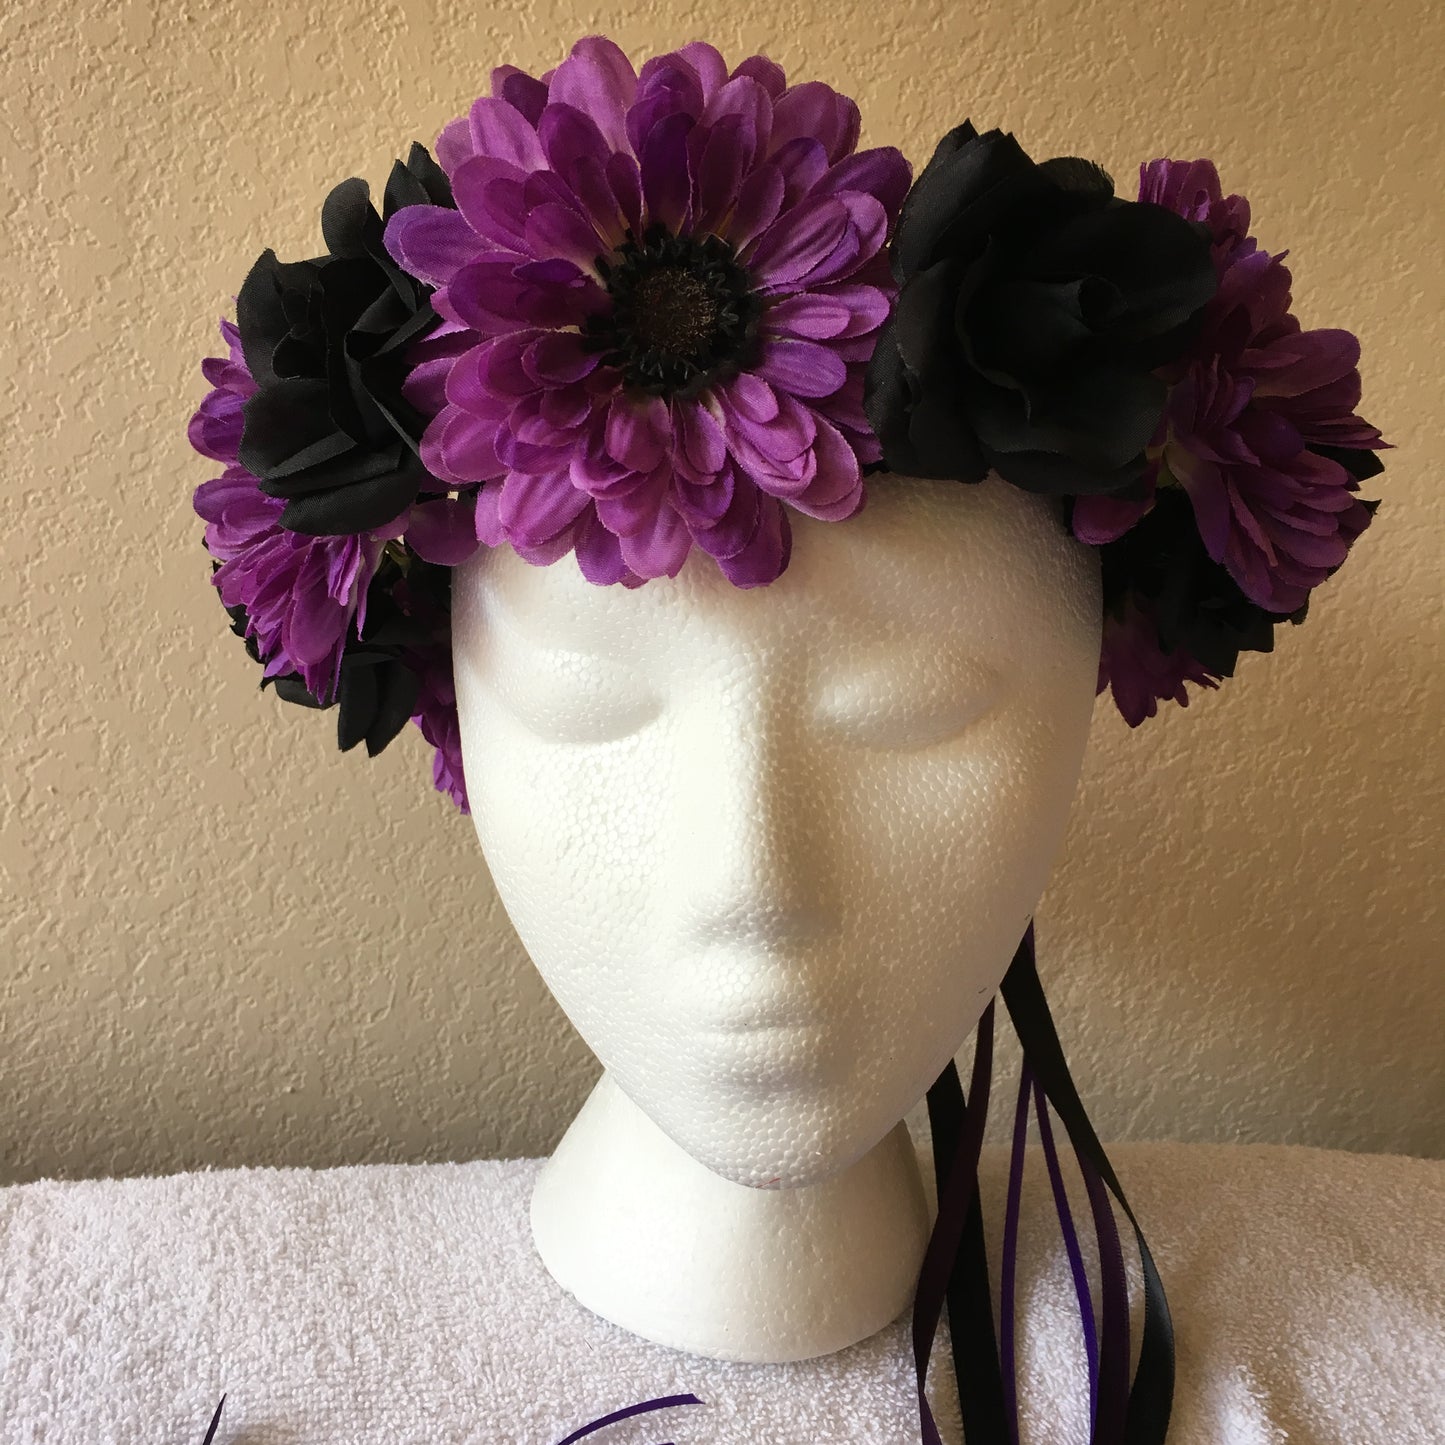 Medium Wreath - Black roses & purple daisies